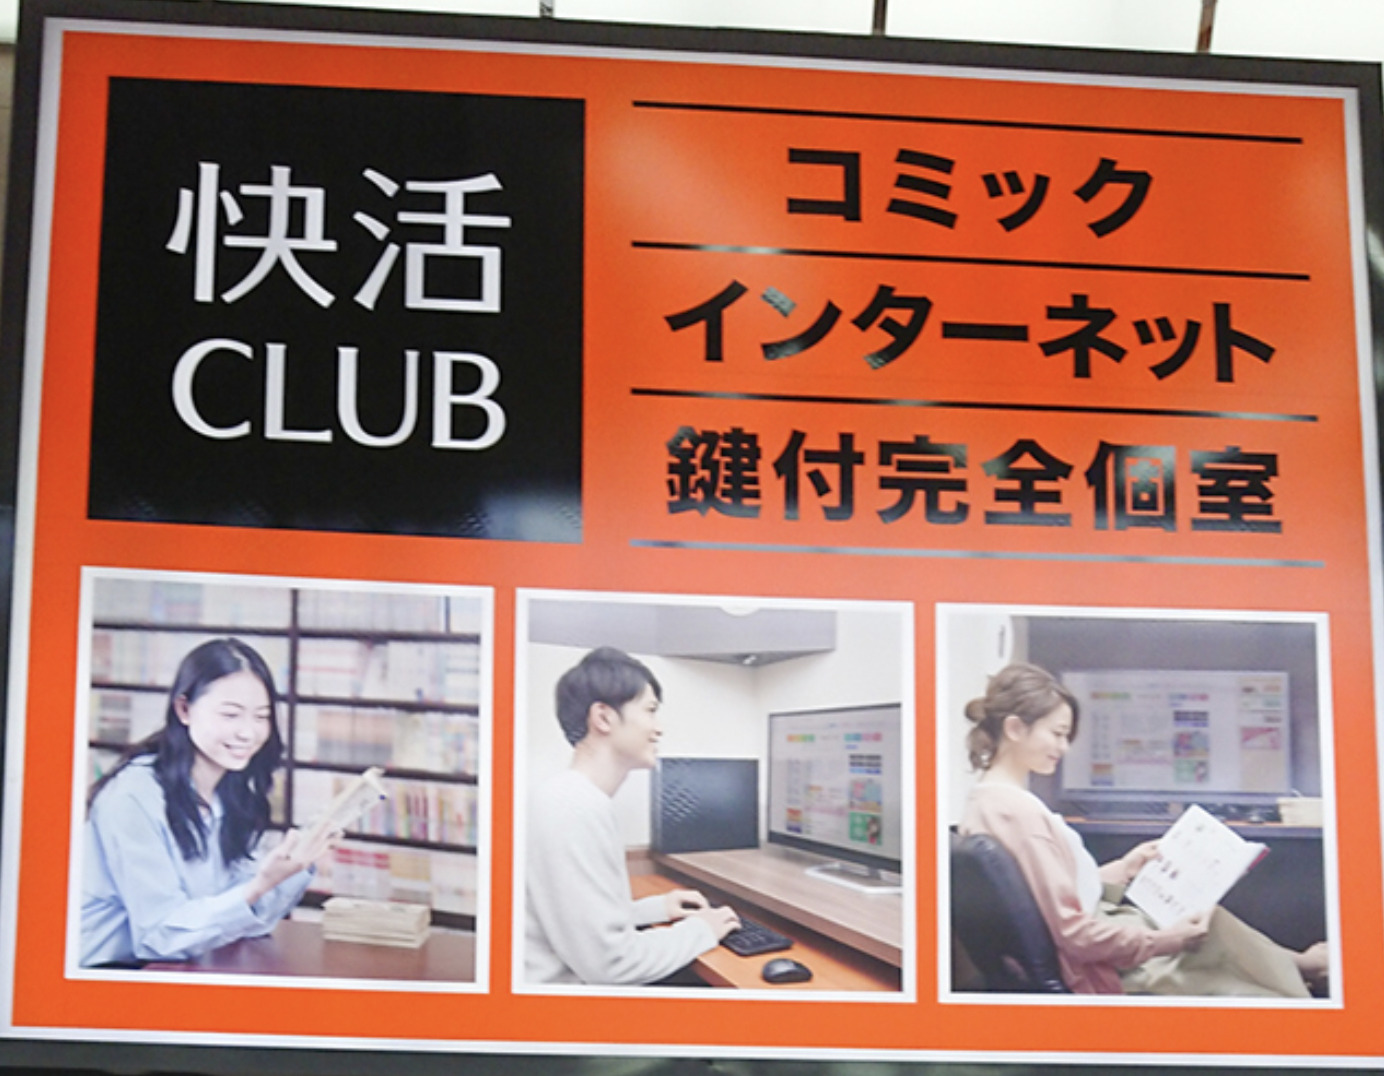 KAIKATSU CLUB